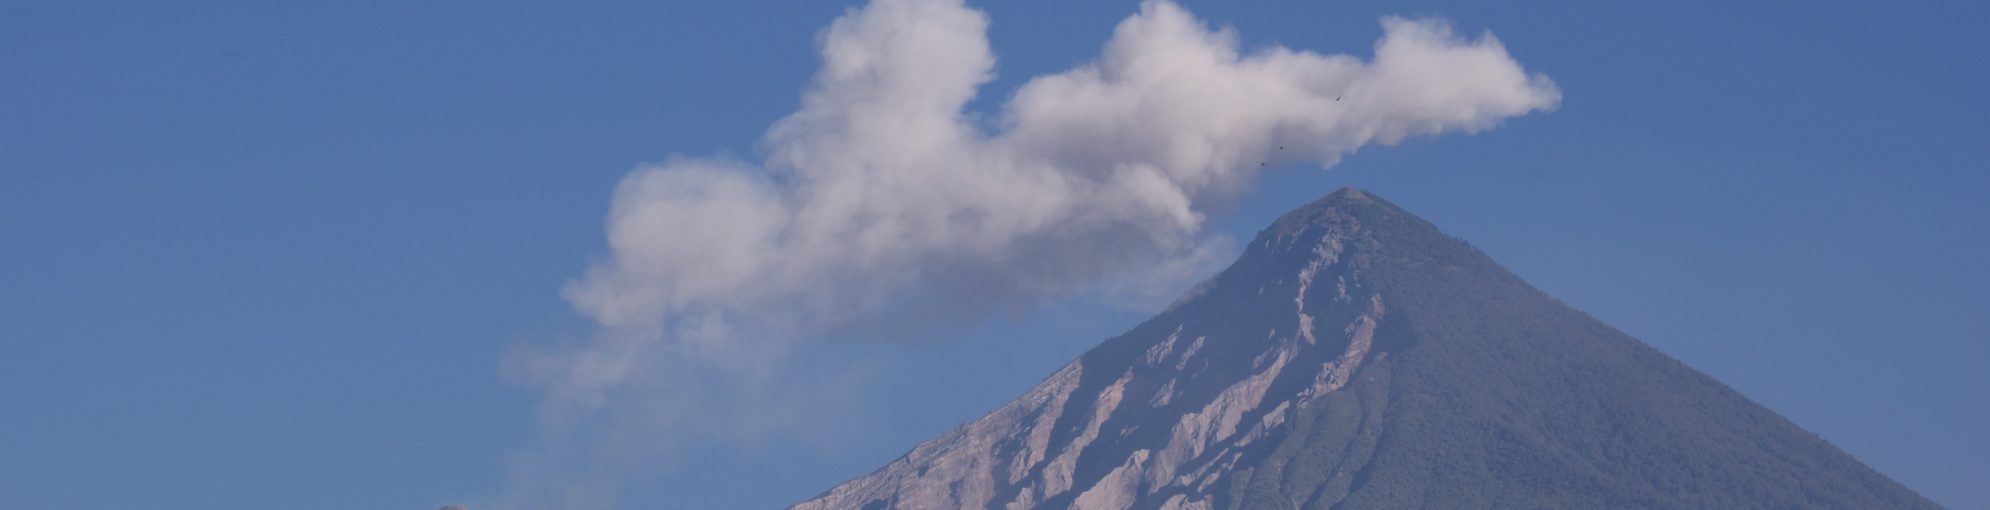 IAVCEI/ECR Webinar: Social and Historical Volcanology